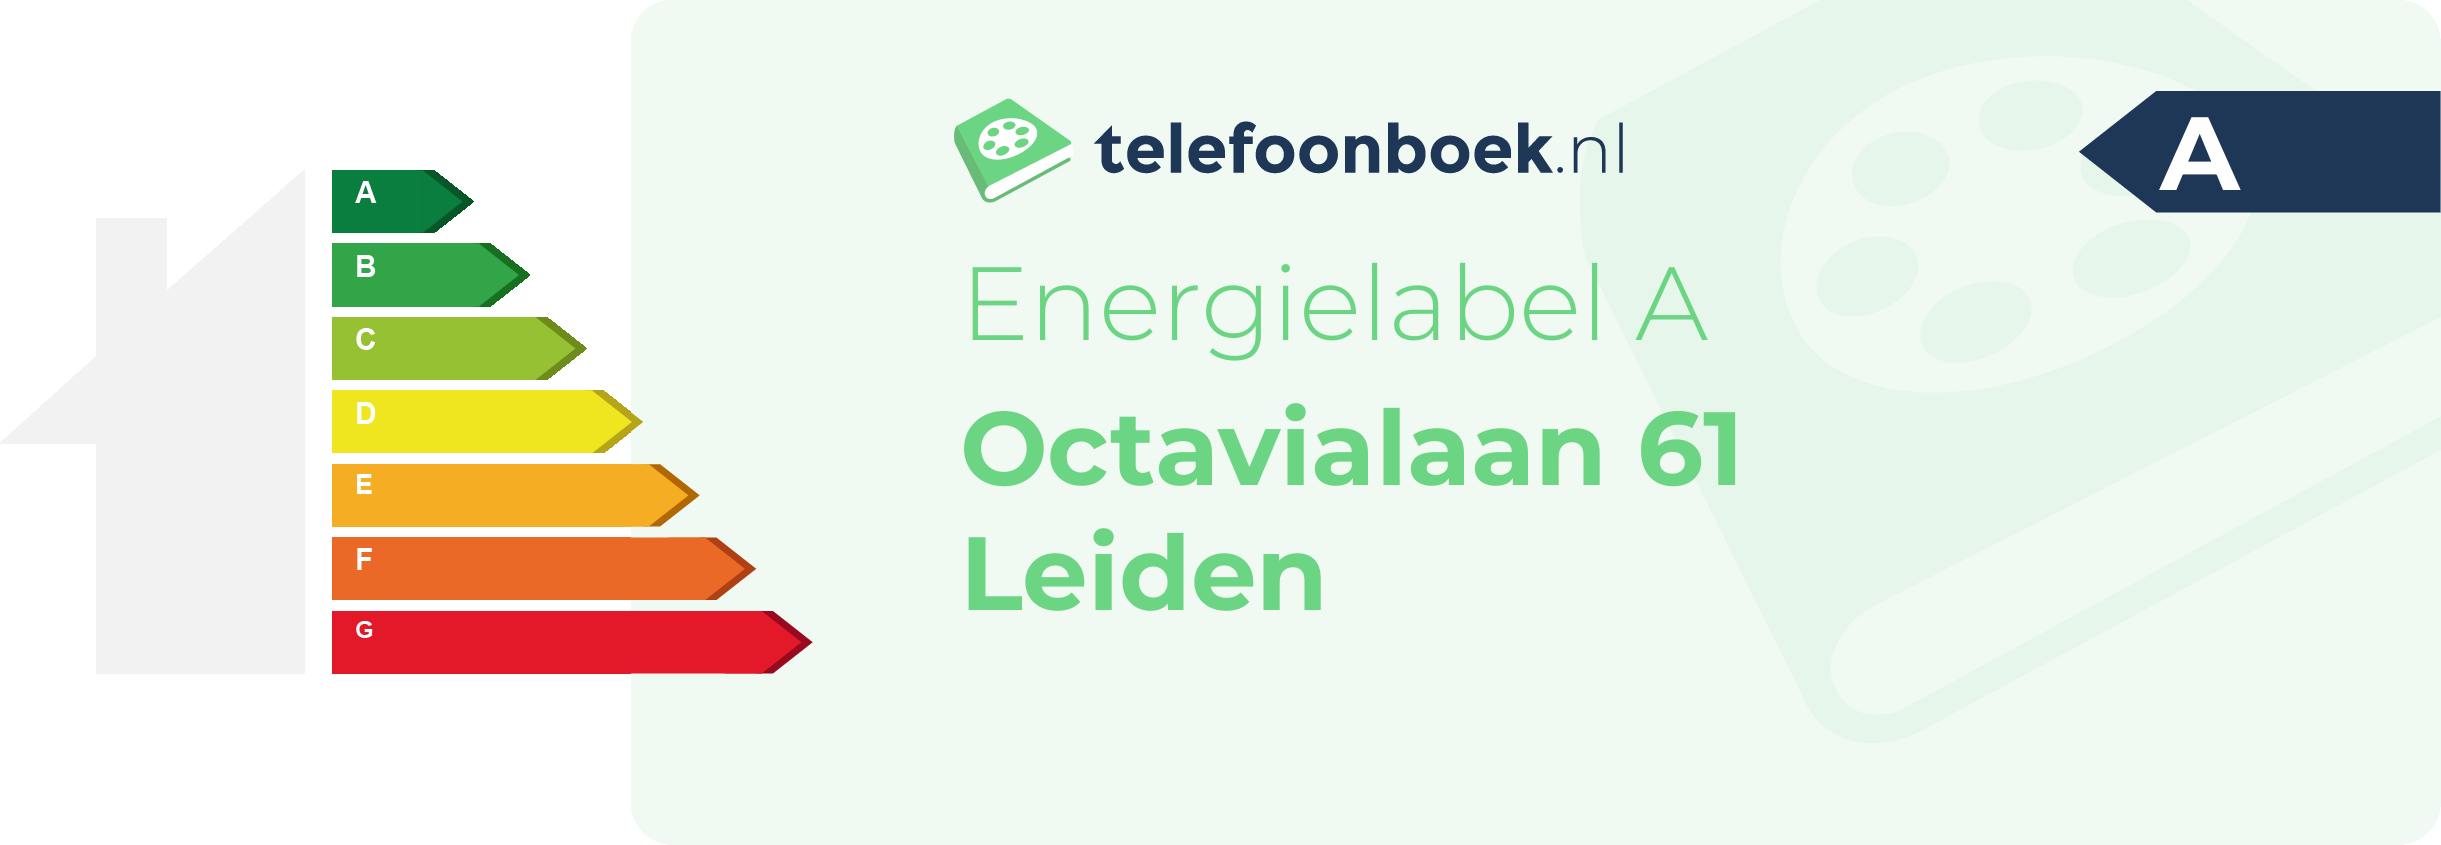 Energielabel Octavialaan 61 Leiden